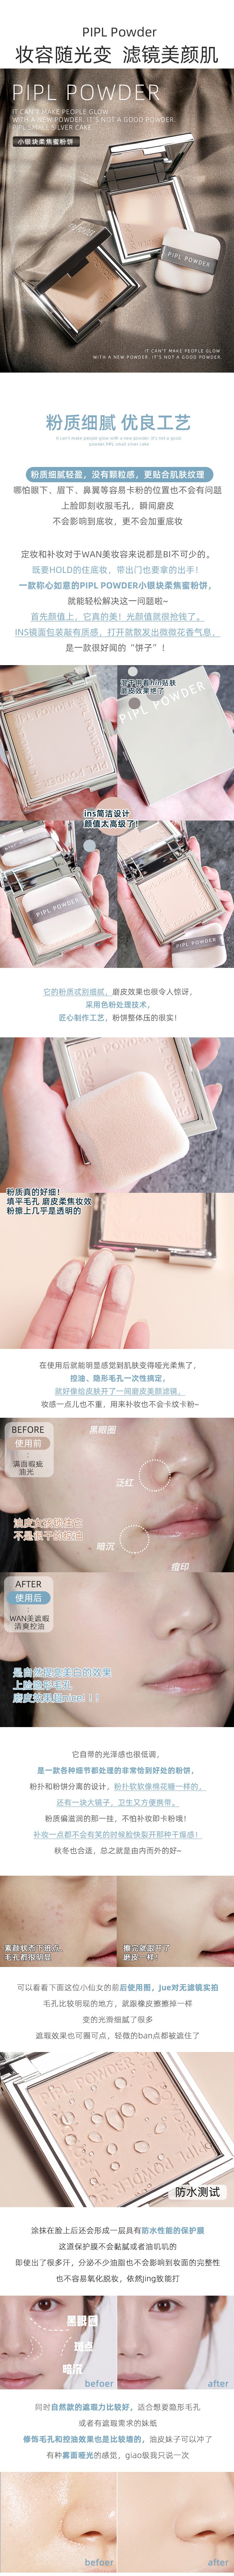 中国 PIPL 小银块定妆粉饼 持久蜜粉 #01 自然肤色